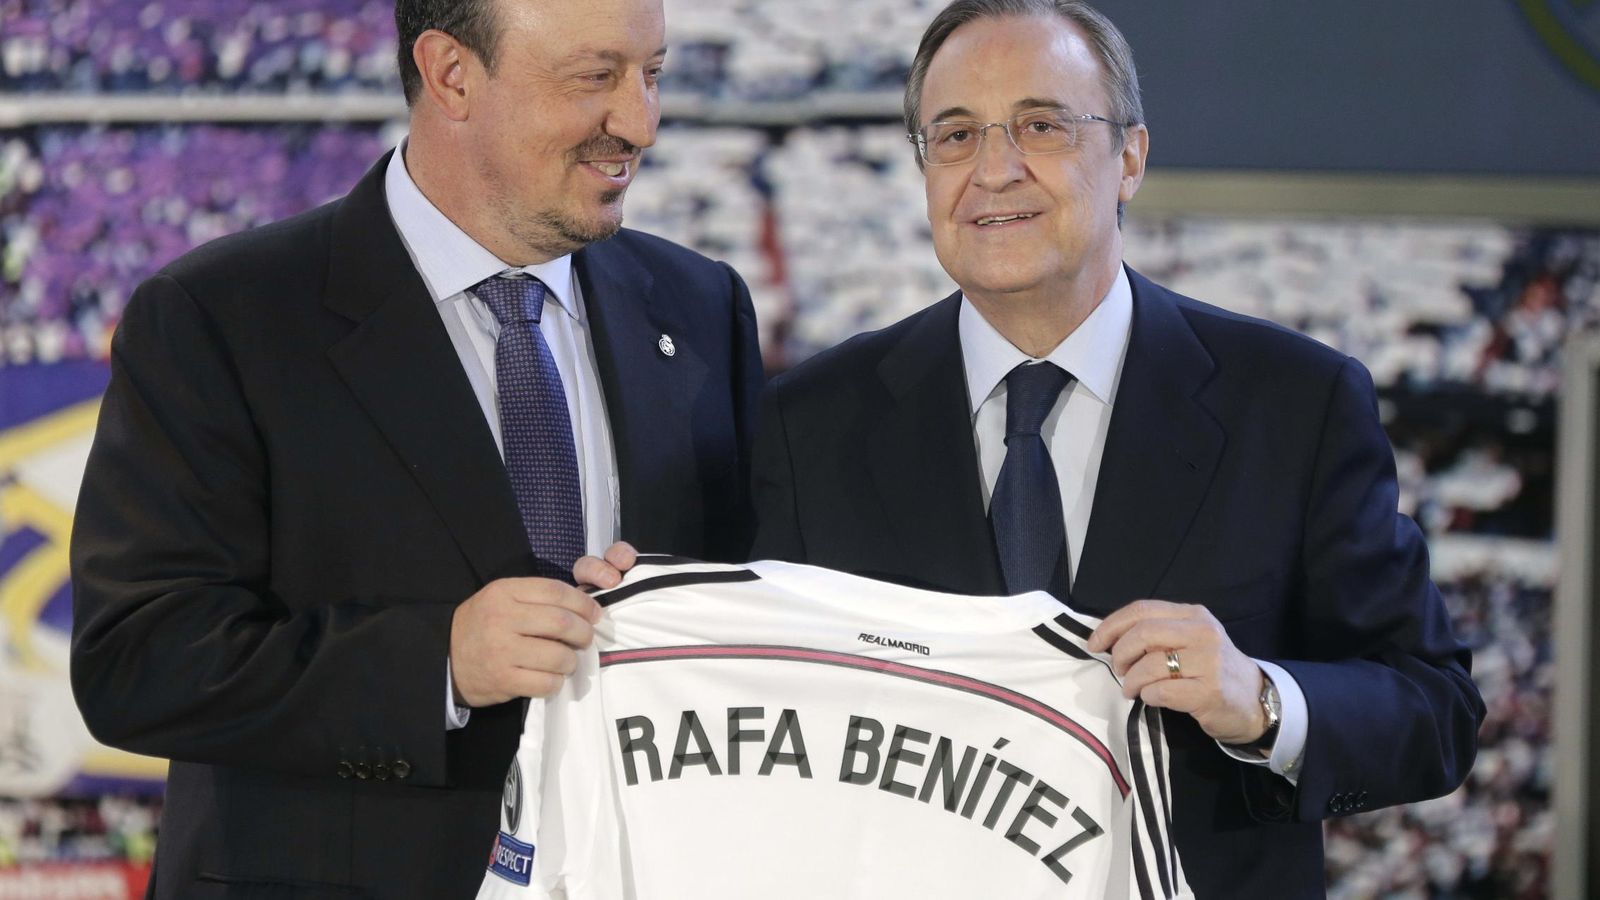 Foto: Rafa Benítez y Florentino Pérez, el día de la presentación oficial del entrenador (EFE)